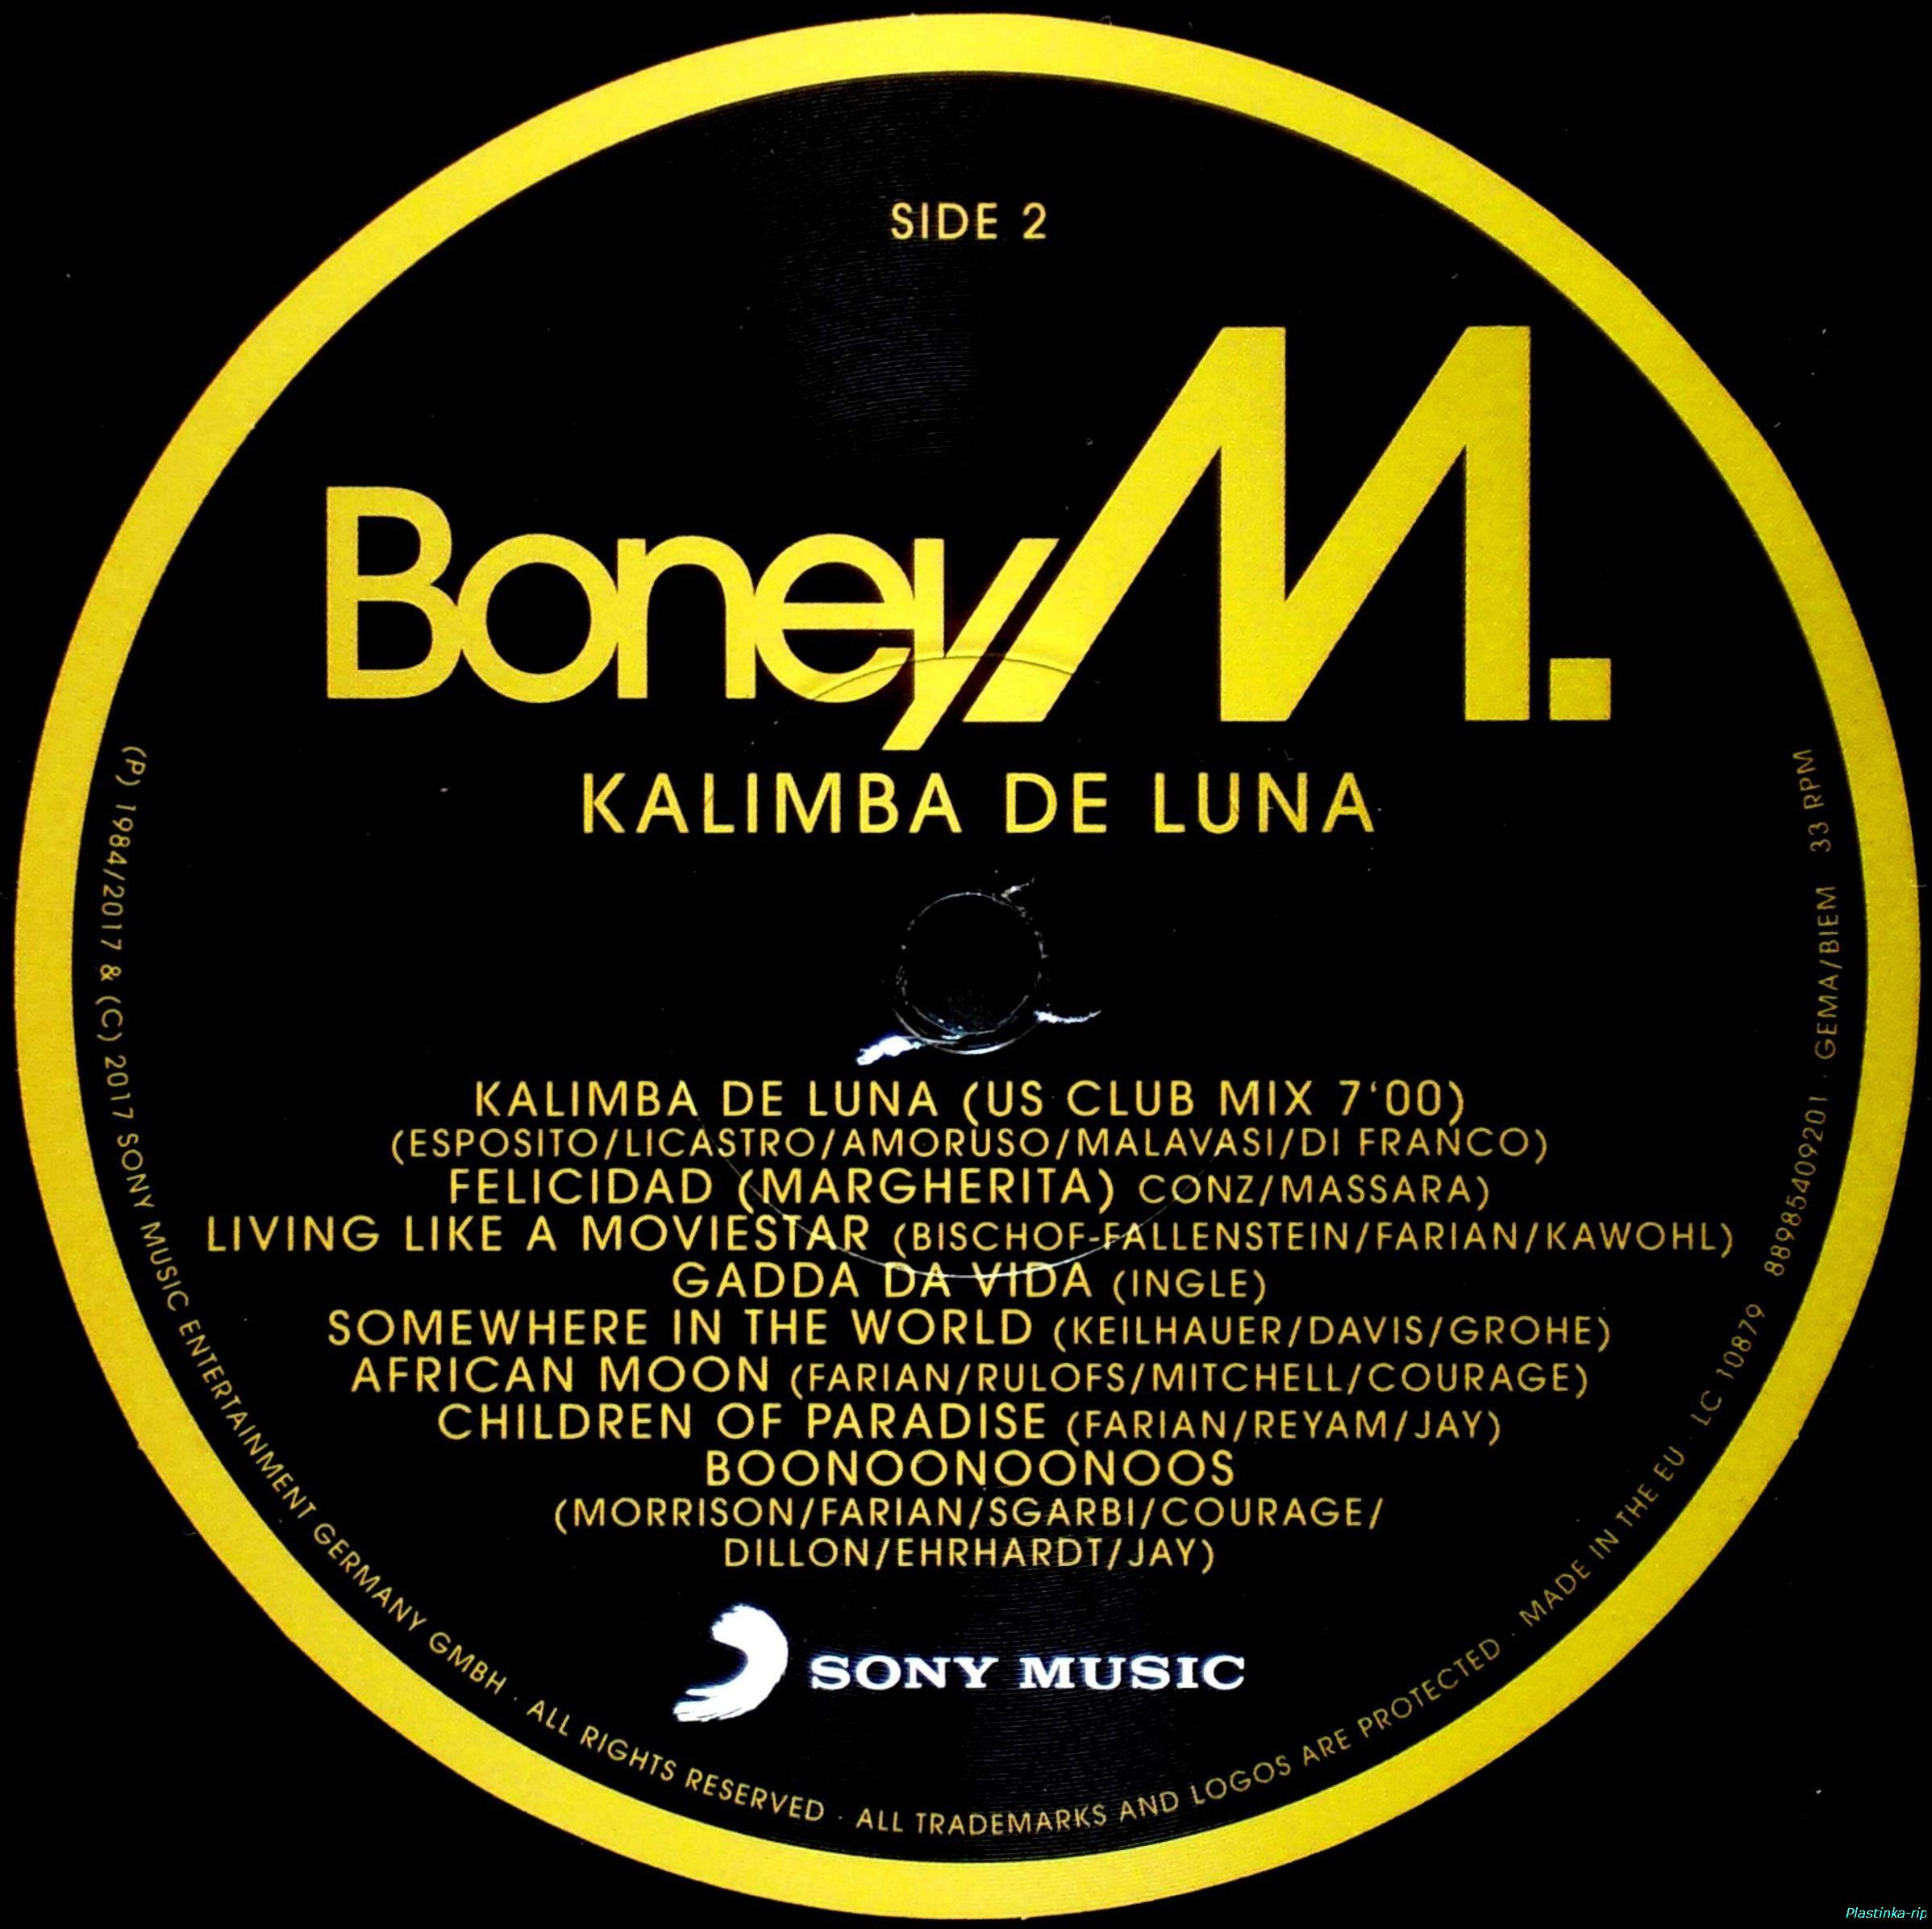 Калимба де луна песни. Этикетка пластинки Boney m. Boney m - Kalimba de Luna пластинка. Винил Boney m Kalimba de Luna. Boney m альбомы Kalimba de Luna.